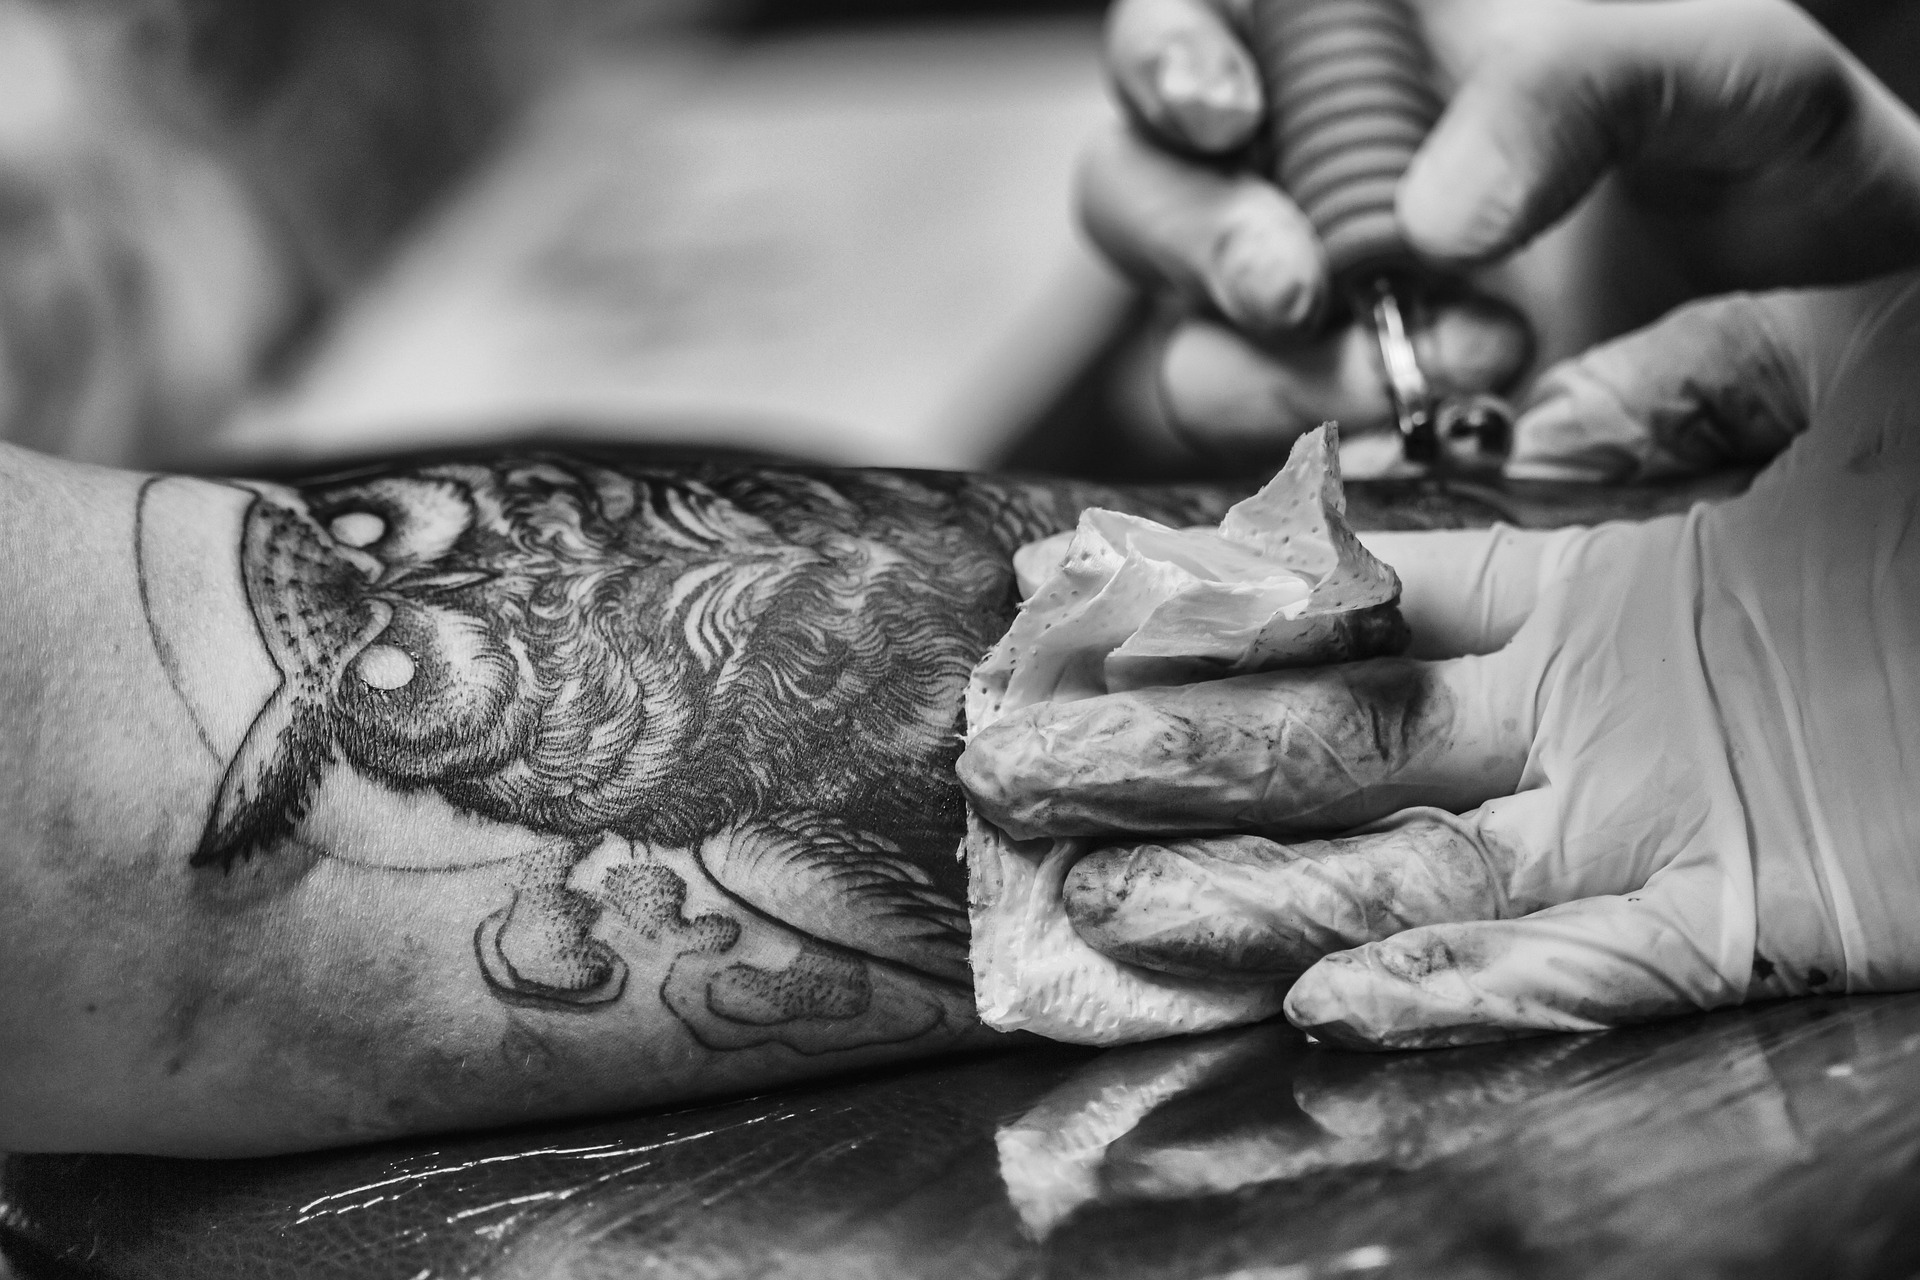 Zdrowie i higiena w tatuażu: Wszystko, co powinieneś wiedzieć o kartridżach i igłach do tatuażu